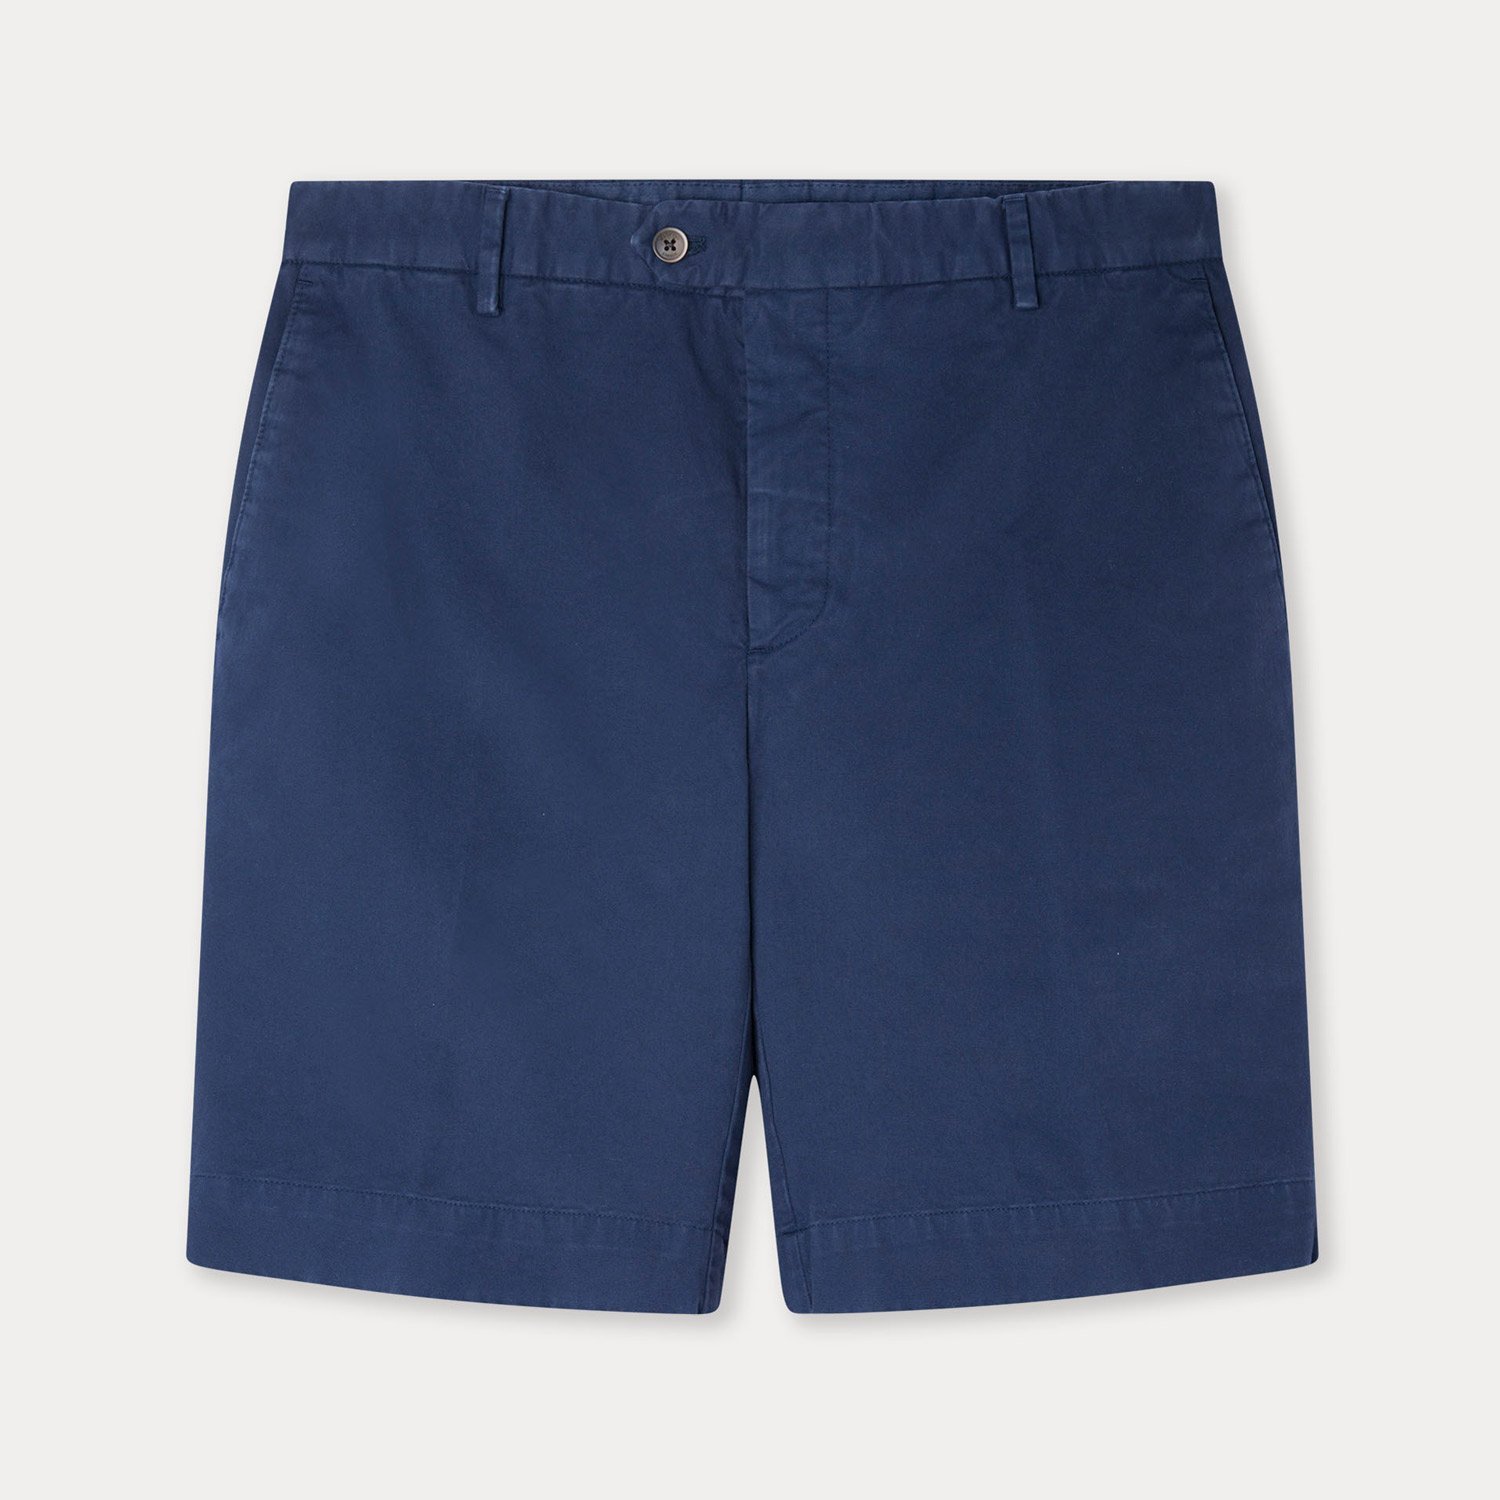 Shorts / Swimwear